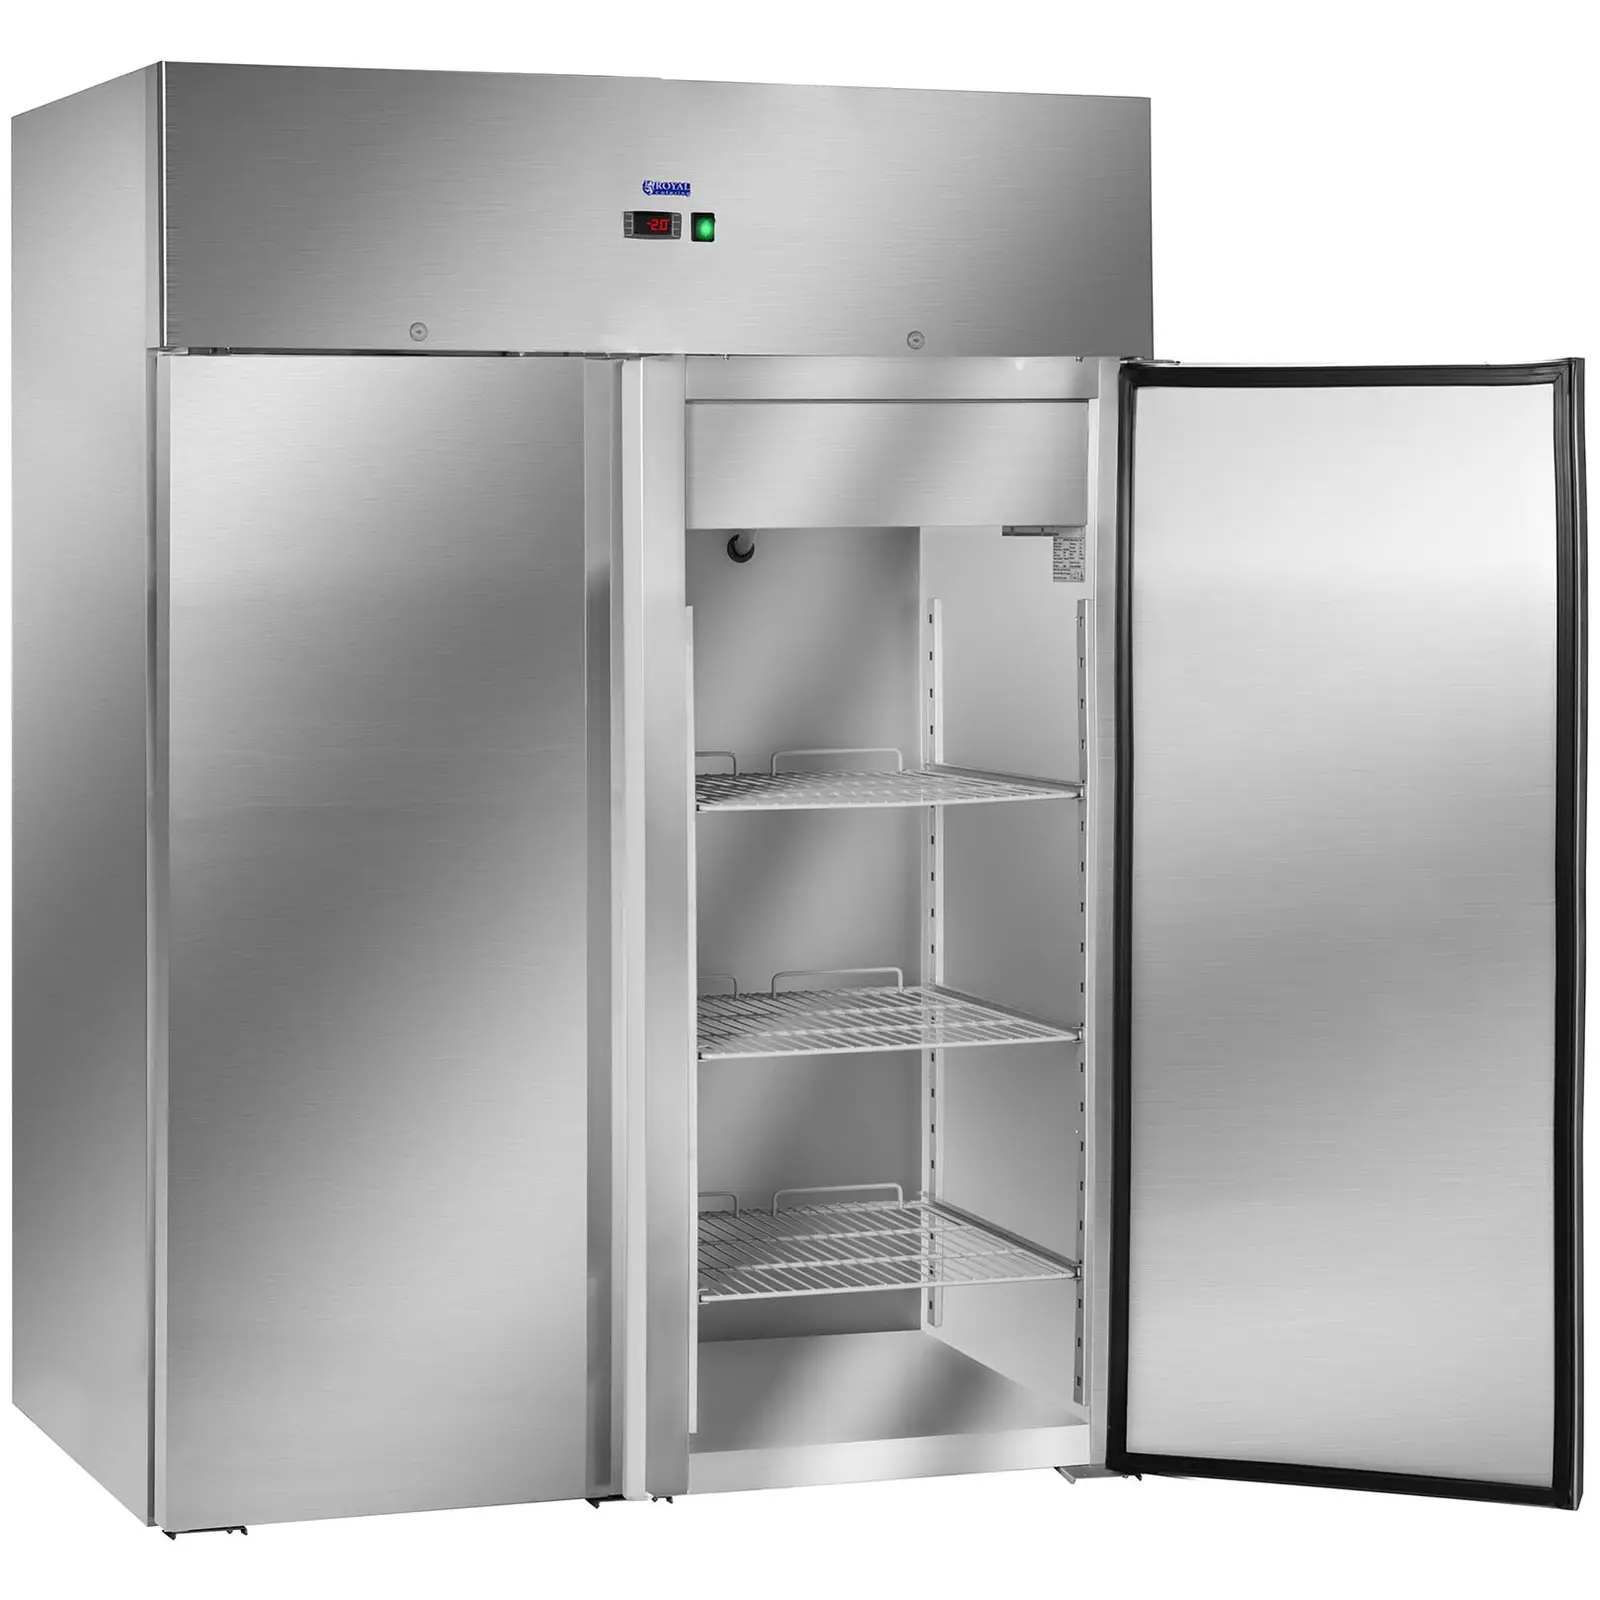 Ψυγείο με δύο πόρτες από ανοξείδωτο ατσάλι - 1168 L